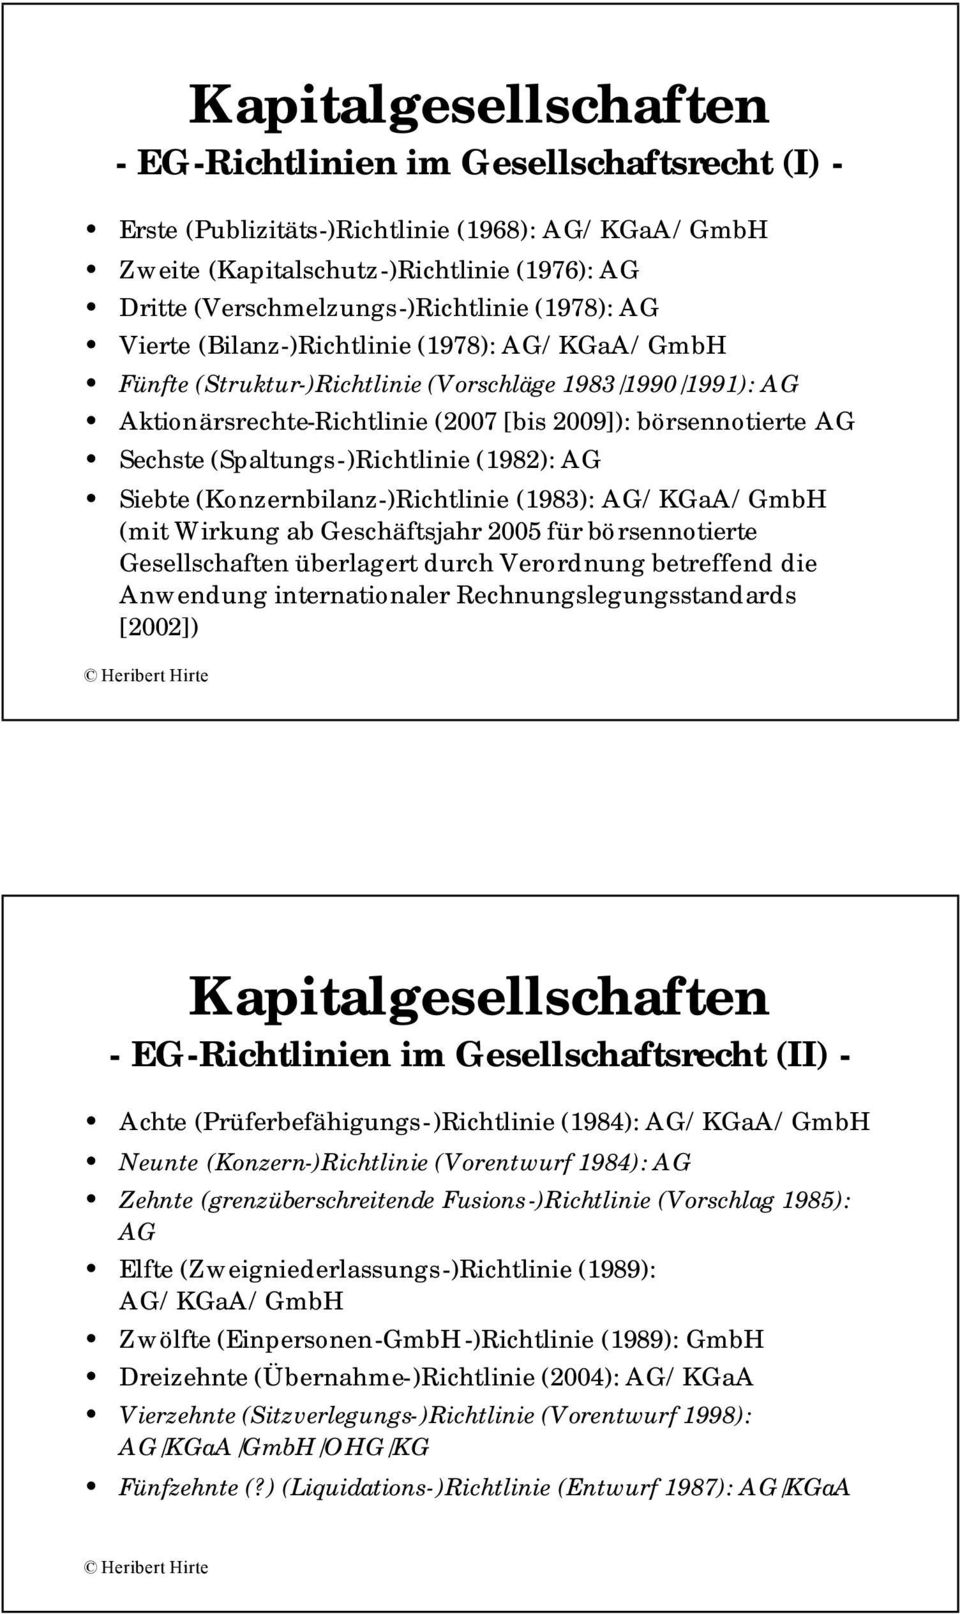 (Spaltungs-)Richtlinie (1982): AG Siebte (Konzernbilanz-)Richtlinie (1983): AG/KGaA/GmbH (mit Wirkung ab Geschäftsjahr 2005 für börsennotierte Gesellschaften überlagert durch Verordnung betreffend